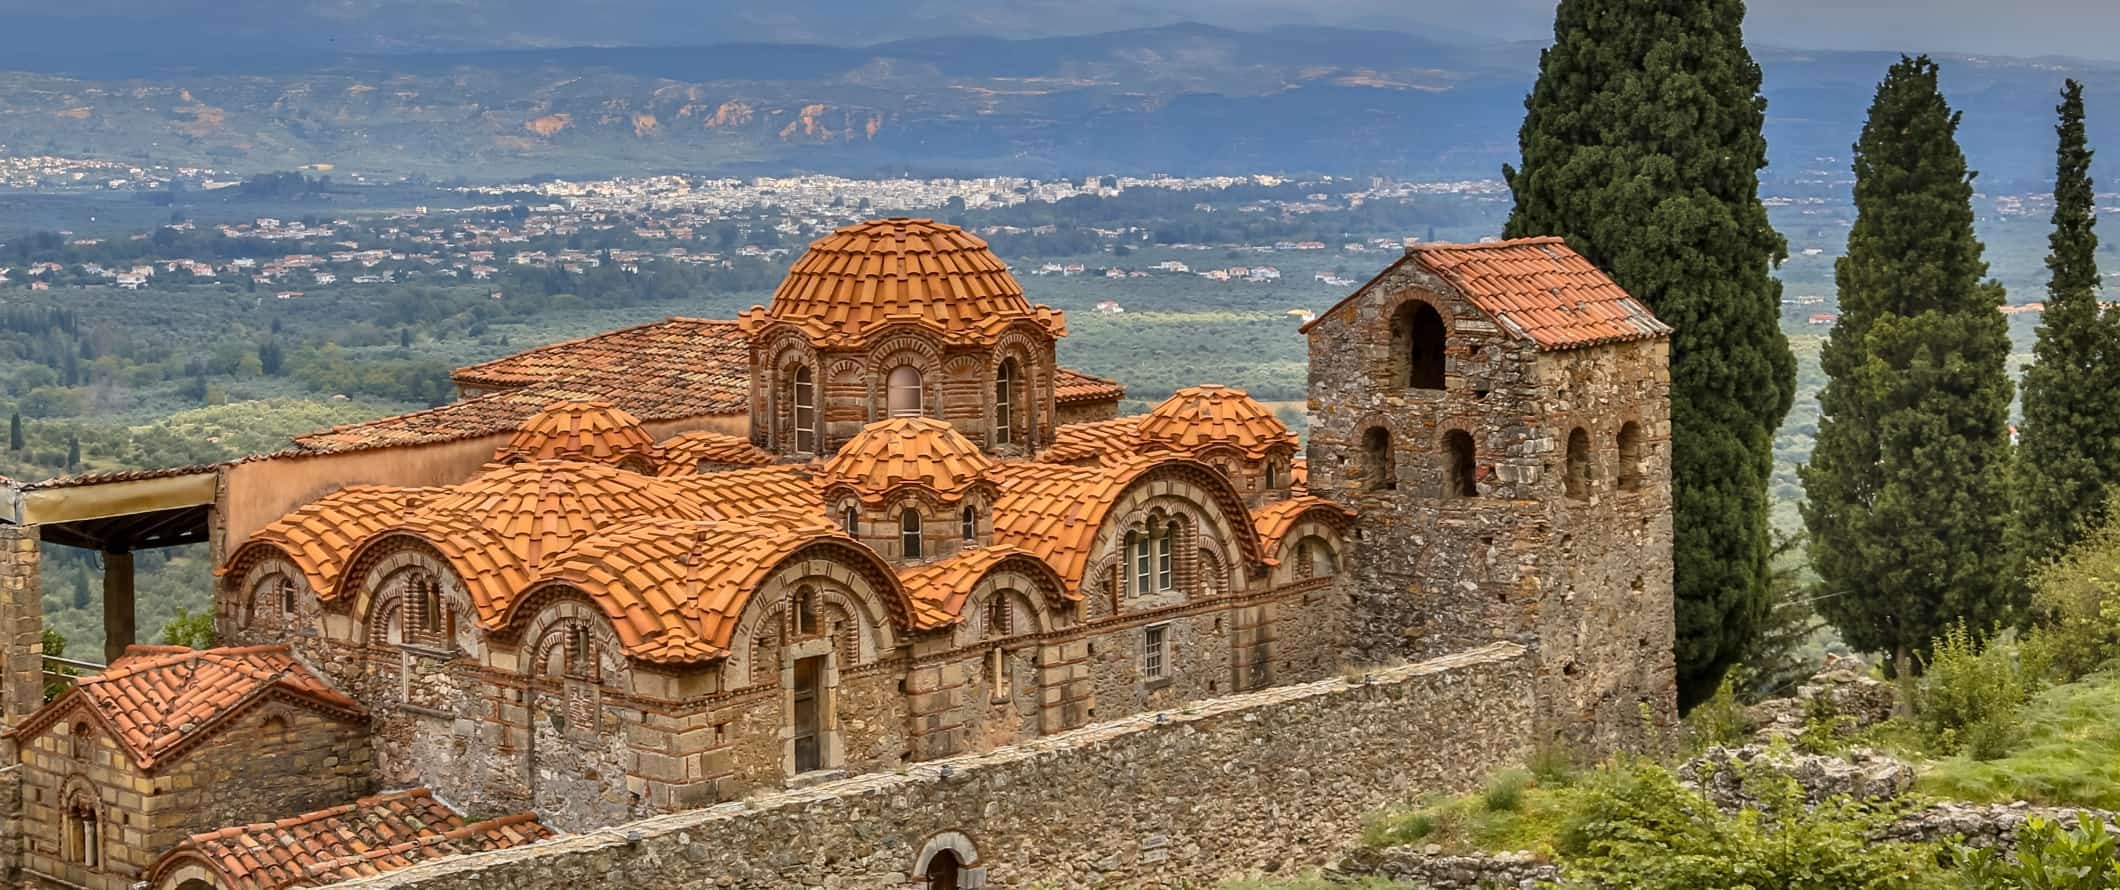 Byzantine monastery in Mystras near Sparta, Greece.